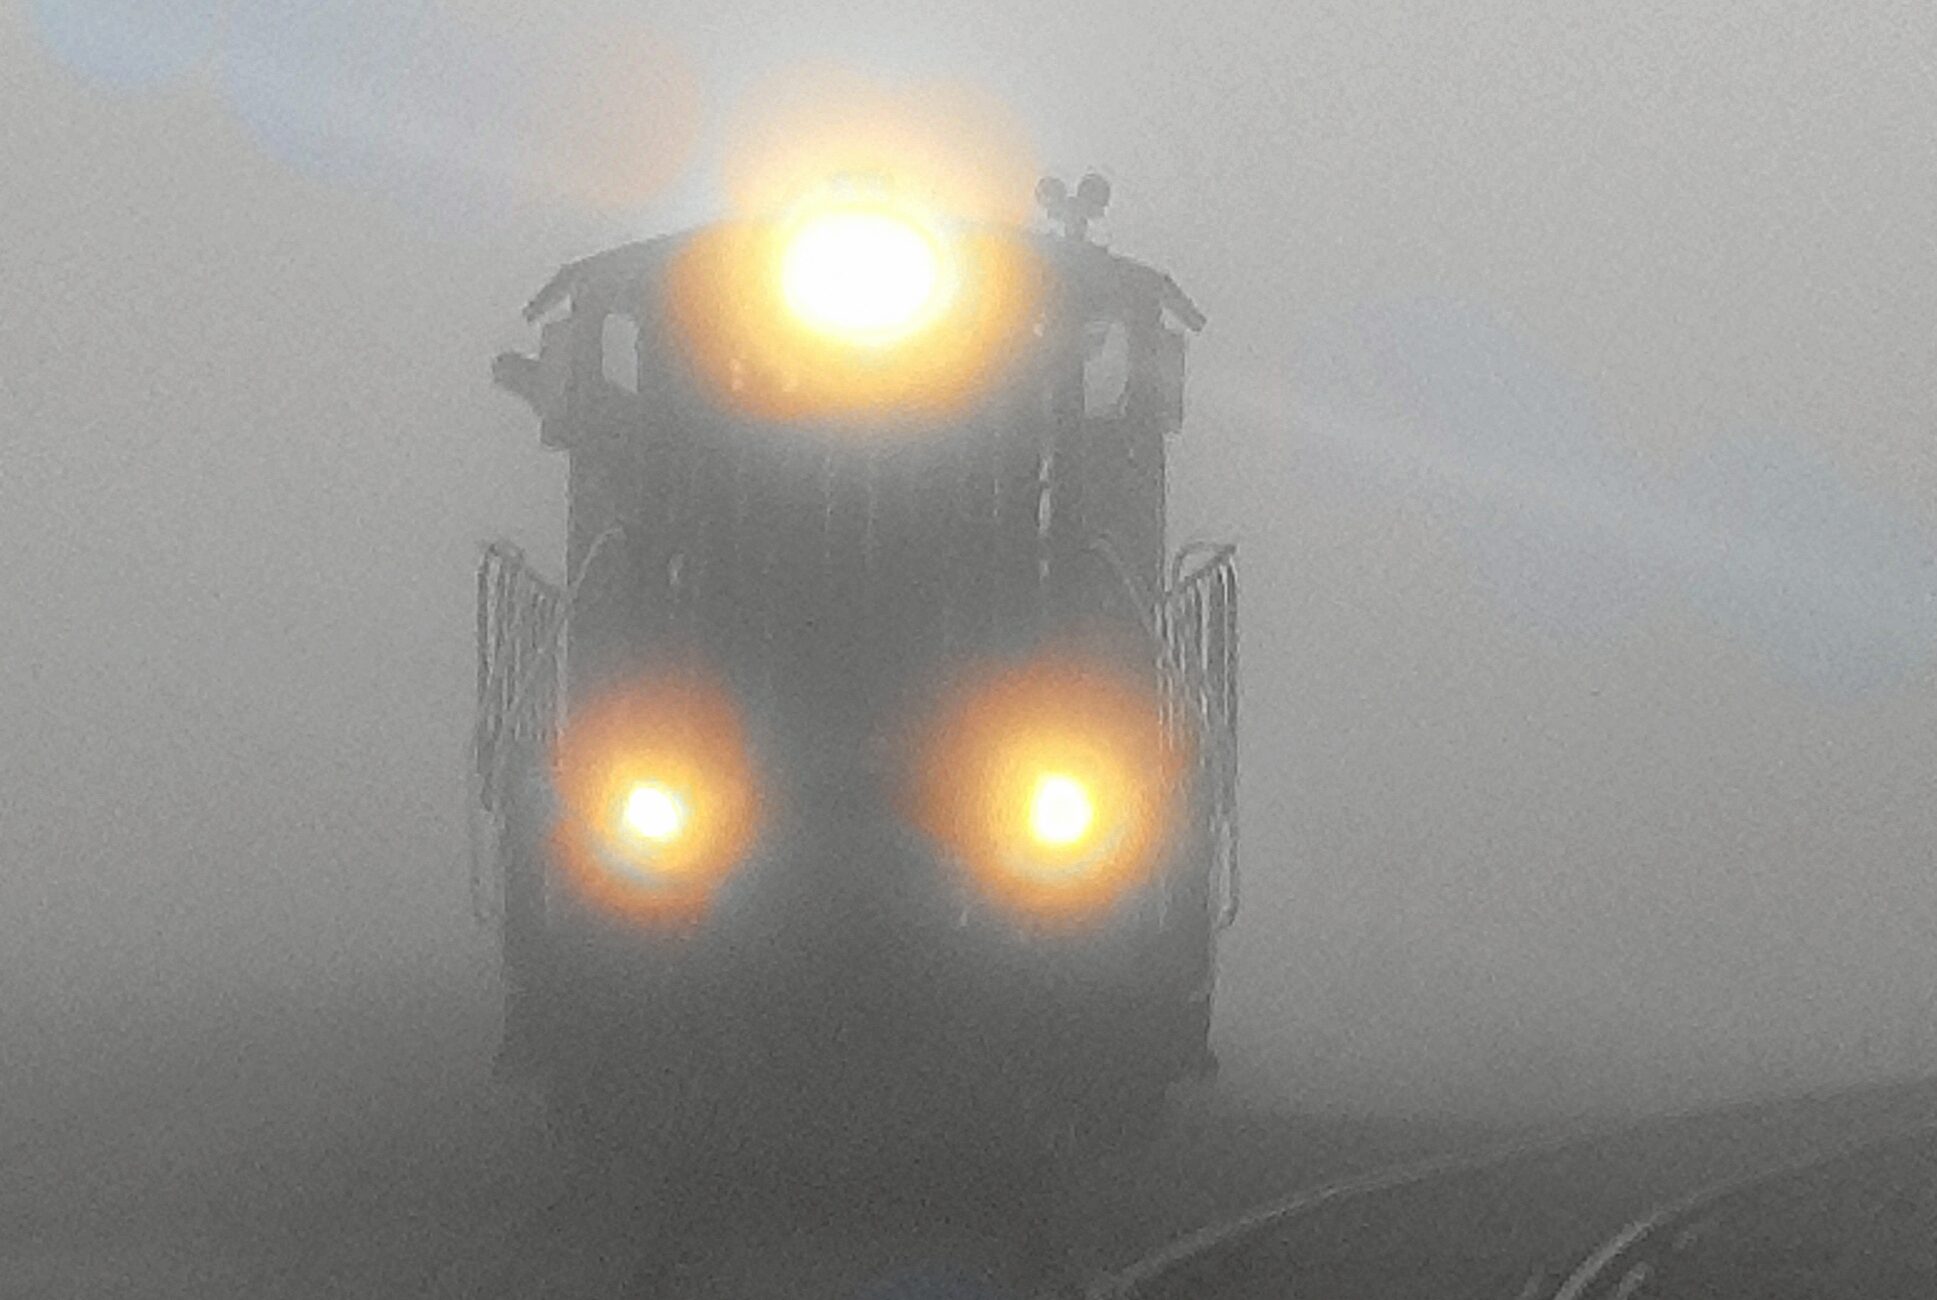 Train fog